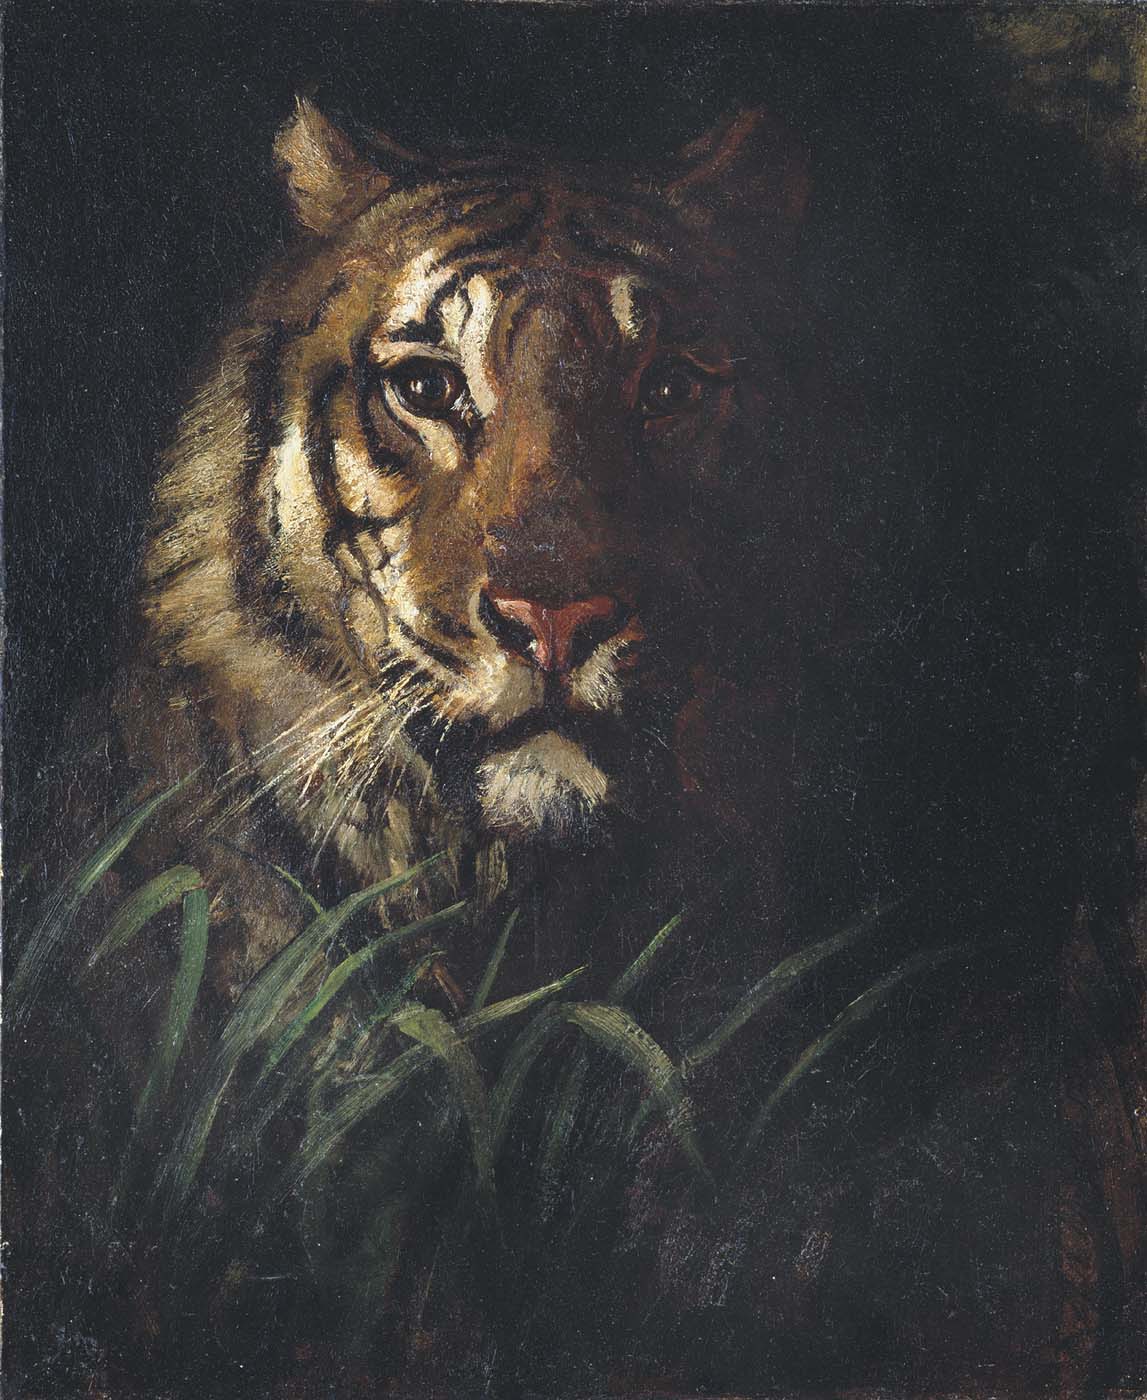 Tiger's Head by Abbott Handerson Thayer